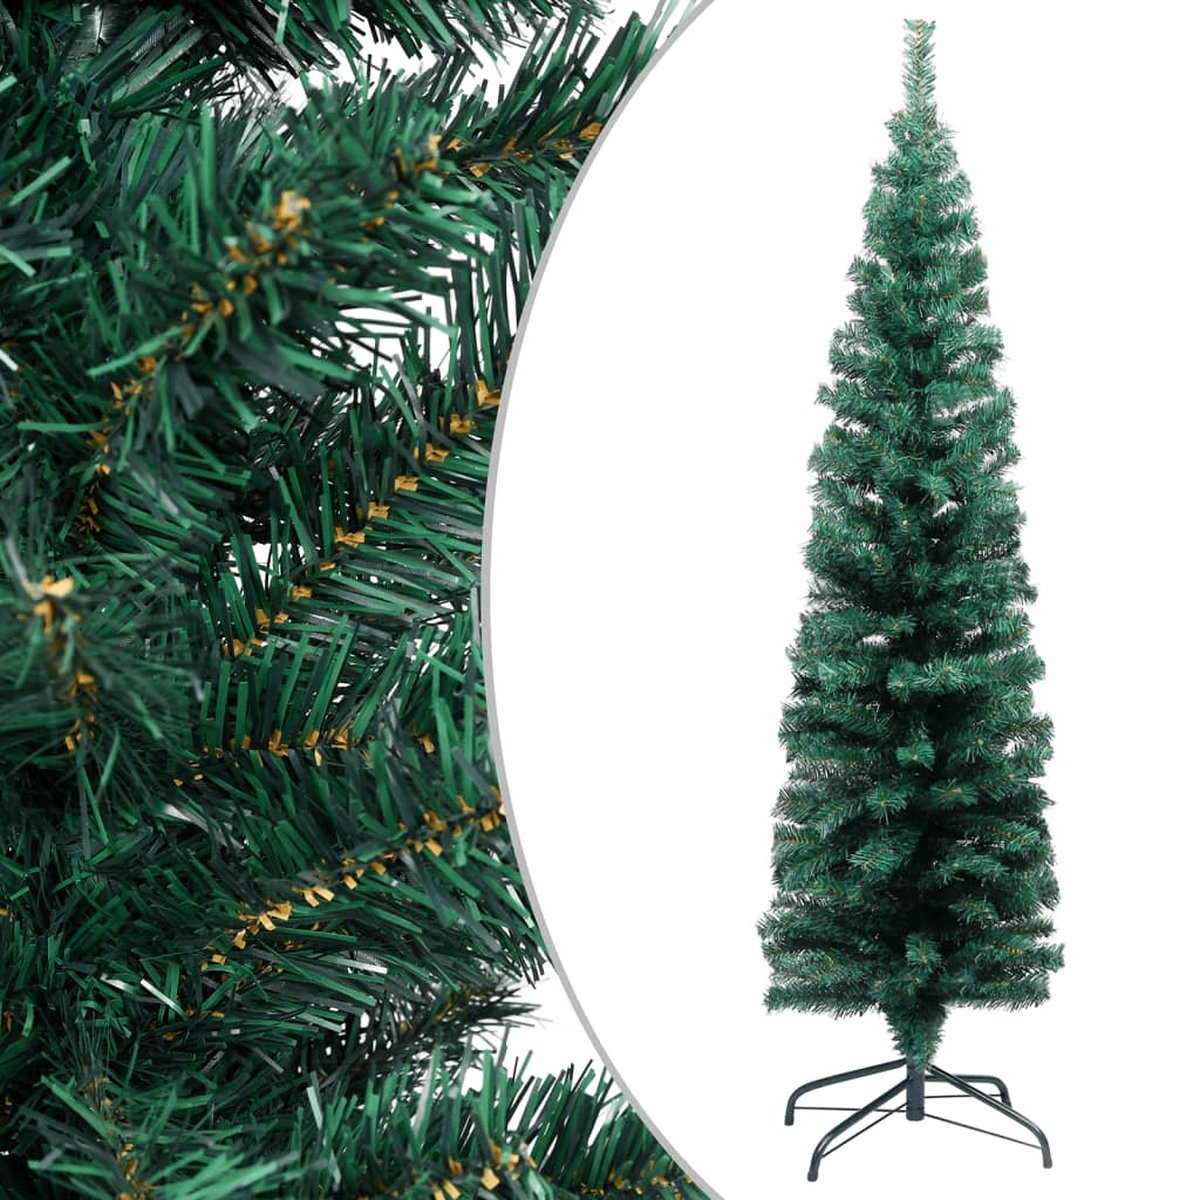 VidaLife Kunstkerstboom met standaard smal 120 cm PVC groen